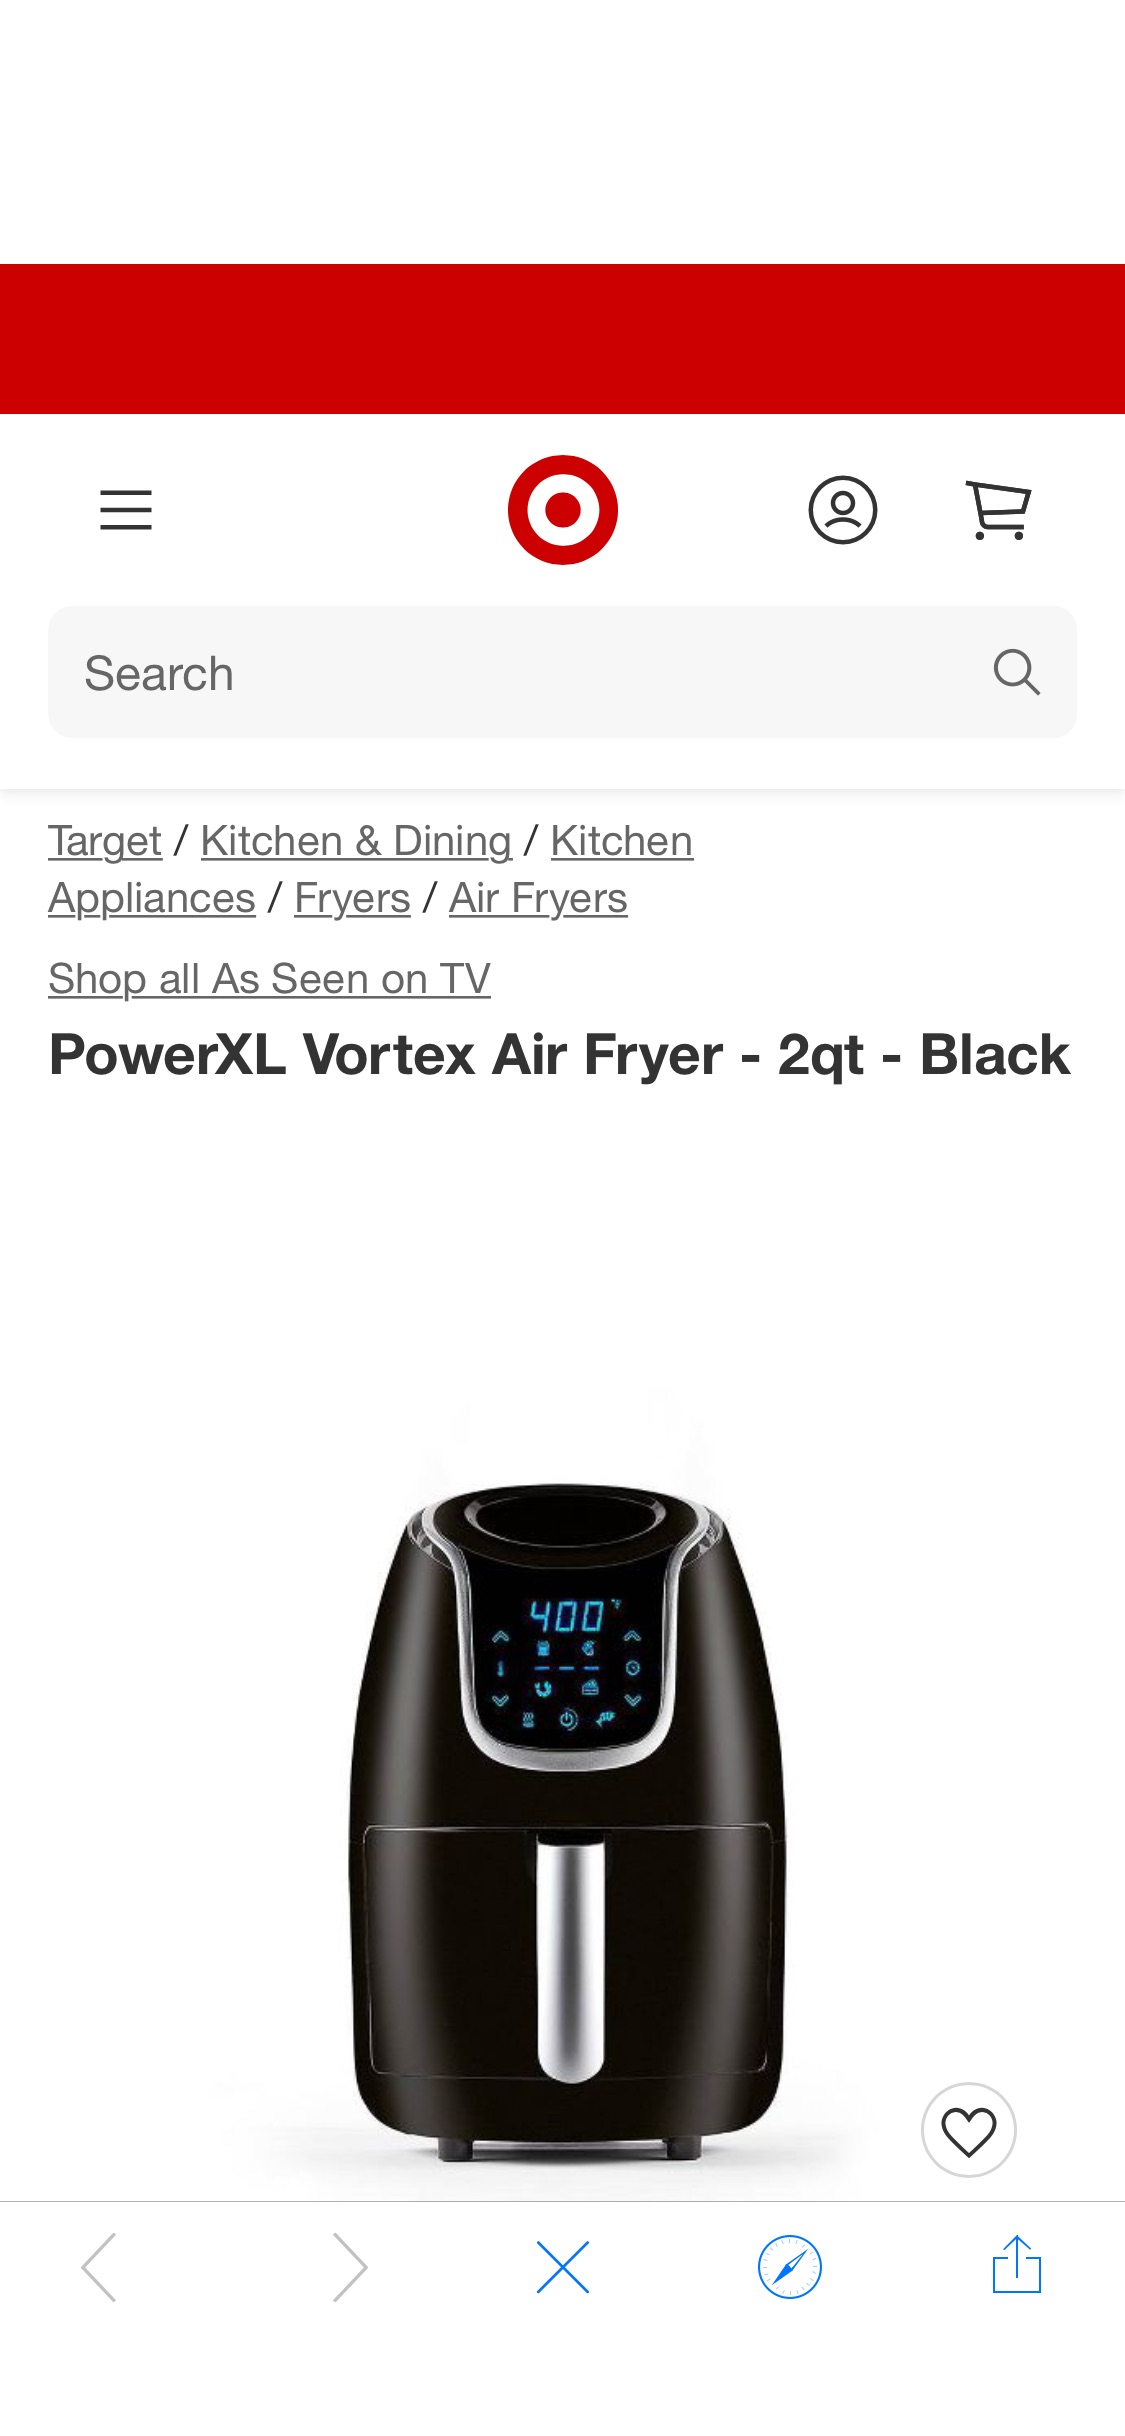 Powerxl Vortex Air Fryer - 2qt - Black : Target为